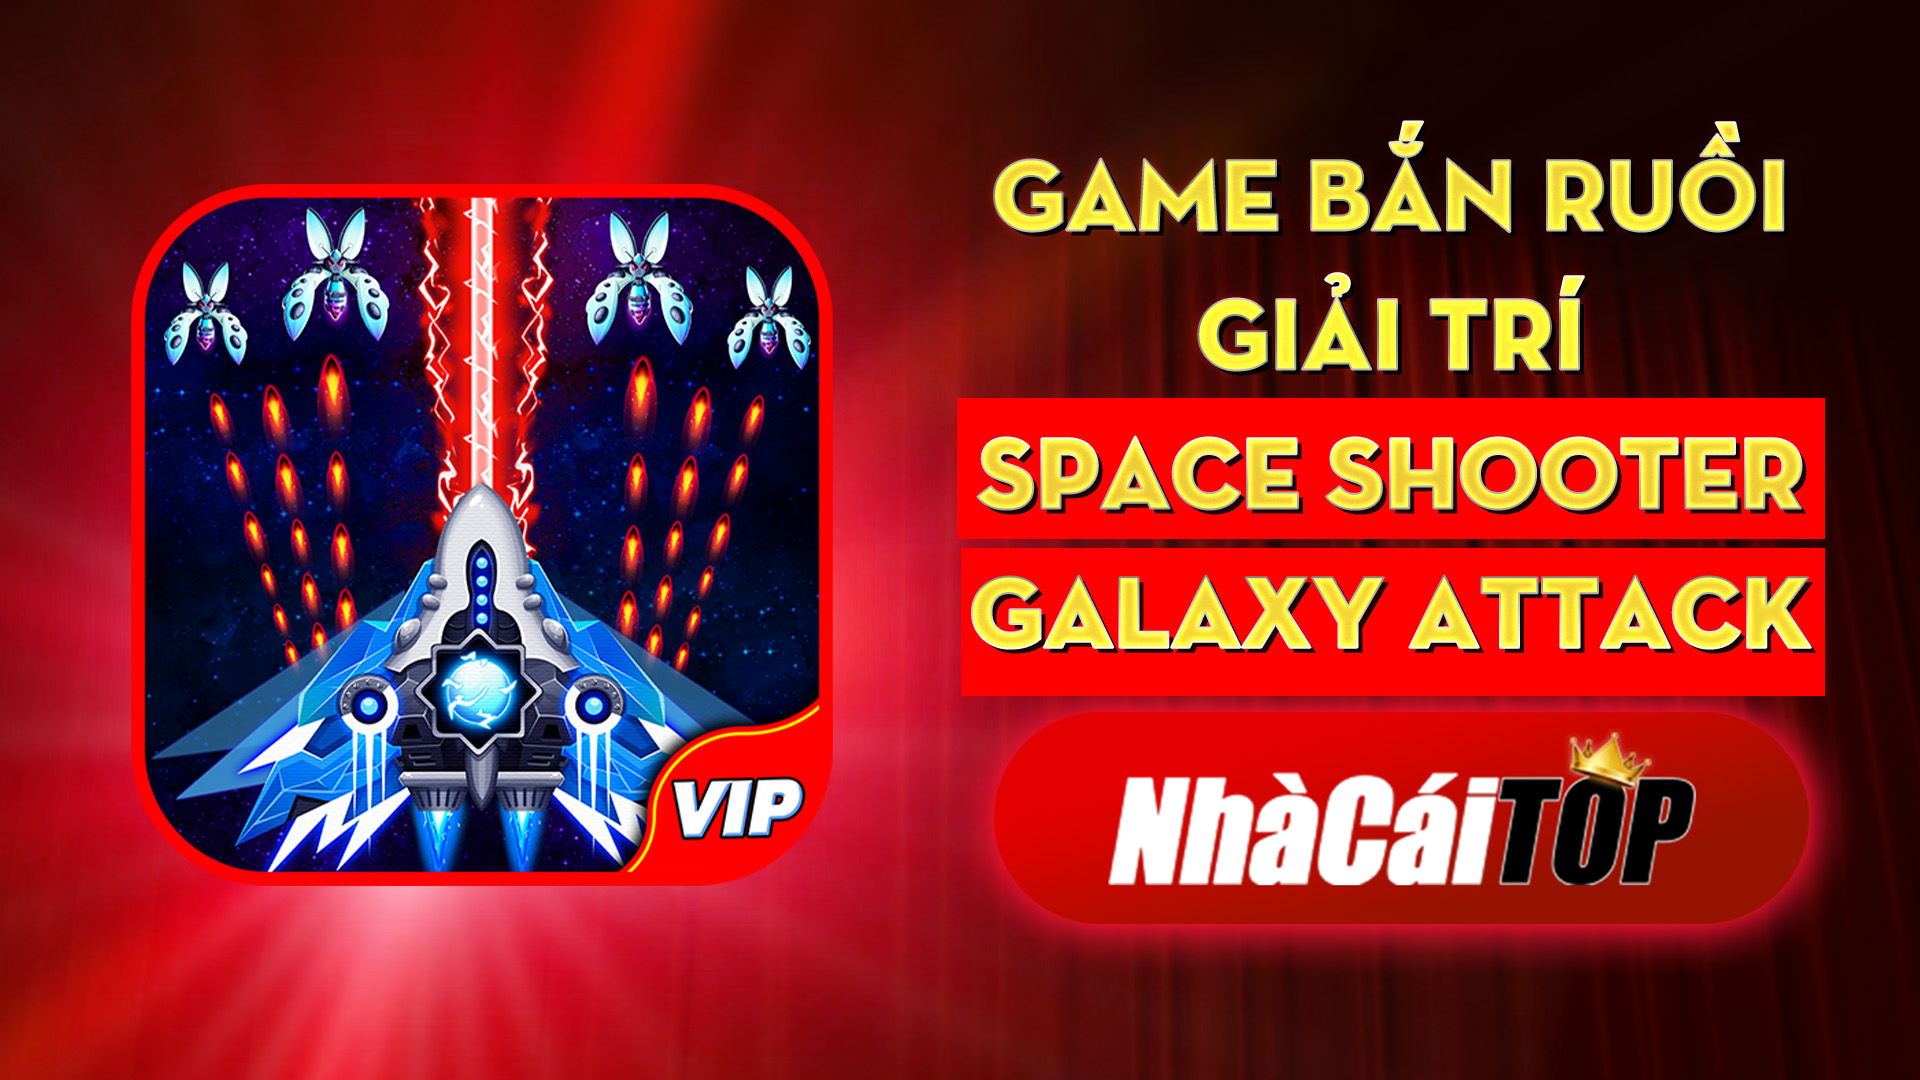 319 Game Ban Ruoi Giai Tri Space Shooter – Galaxy Attack